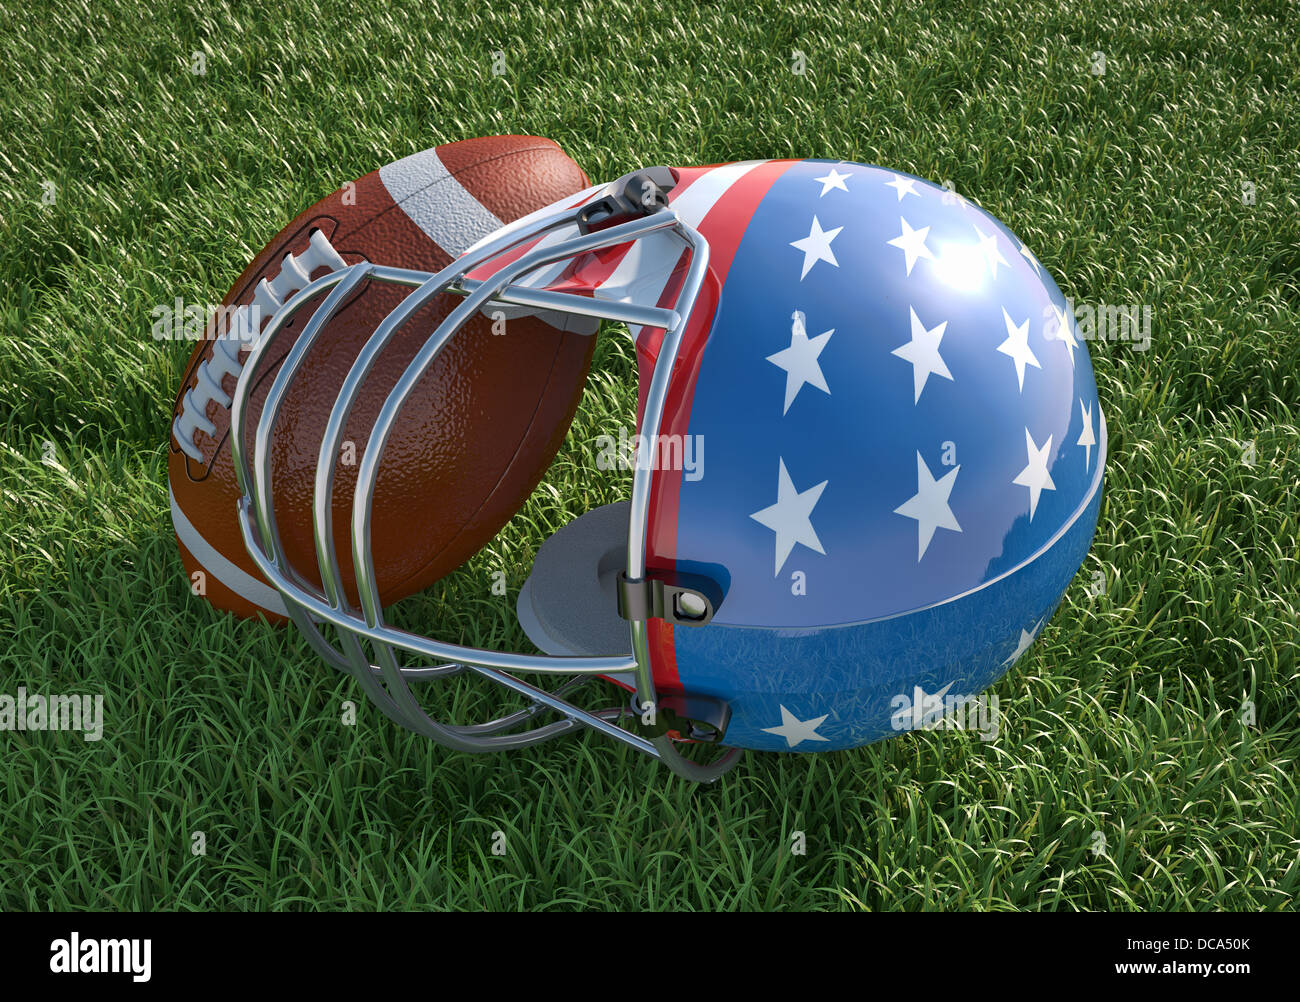 US-amerikanischer American-Football-Helm verziert als amerikanische Flagge mit Sternen und Streifen und Ball, auf dem Rasen. Hautnah. Stockfoto